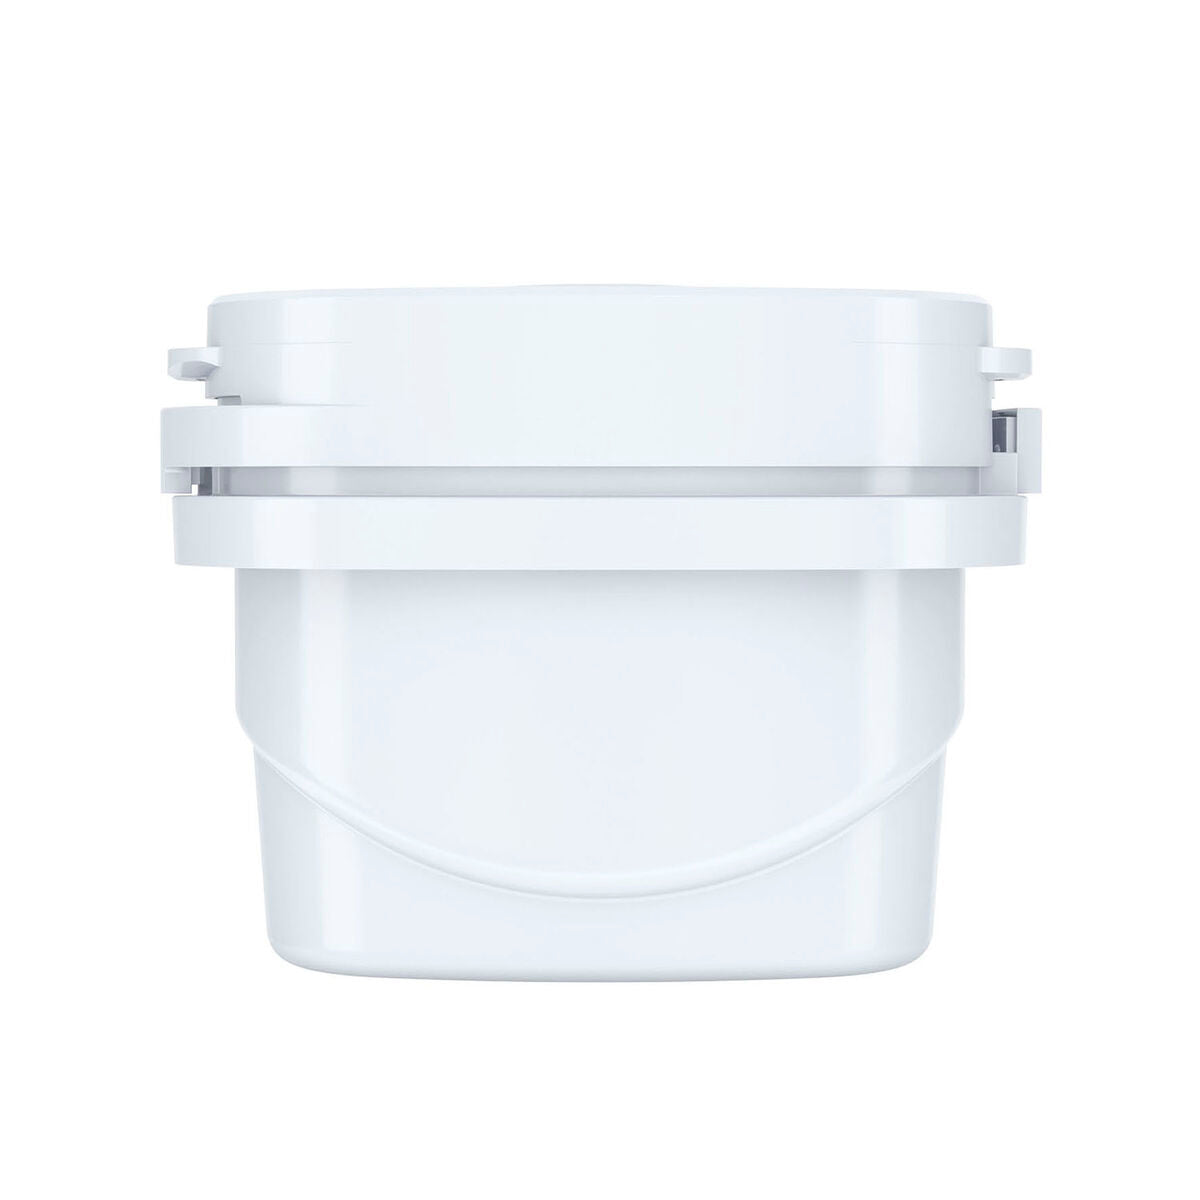 Filter for filter jug Aqua Optima Single Life Evolve (6 Units)